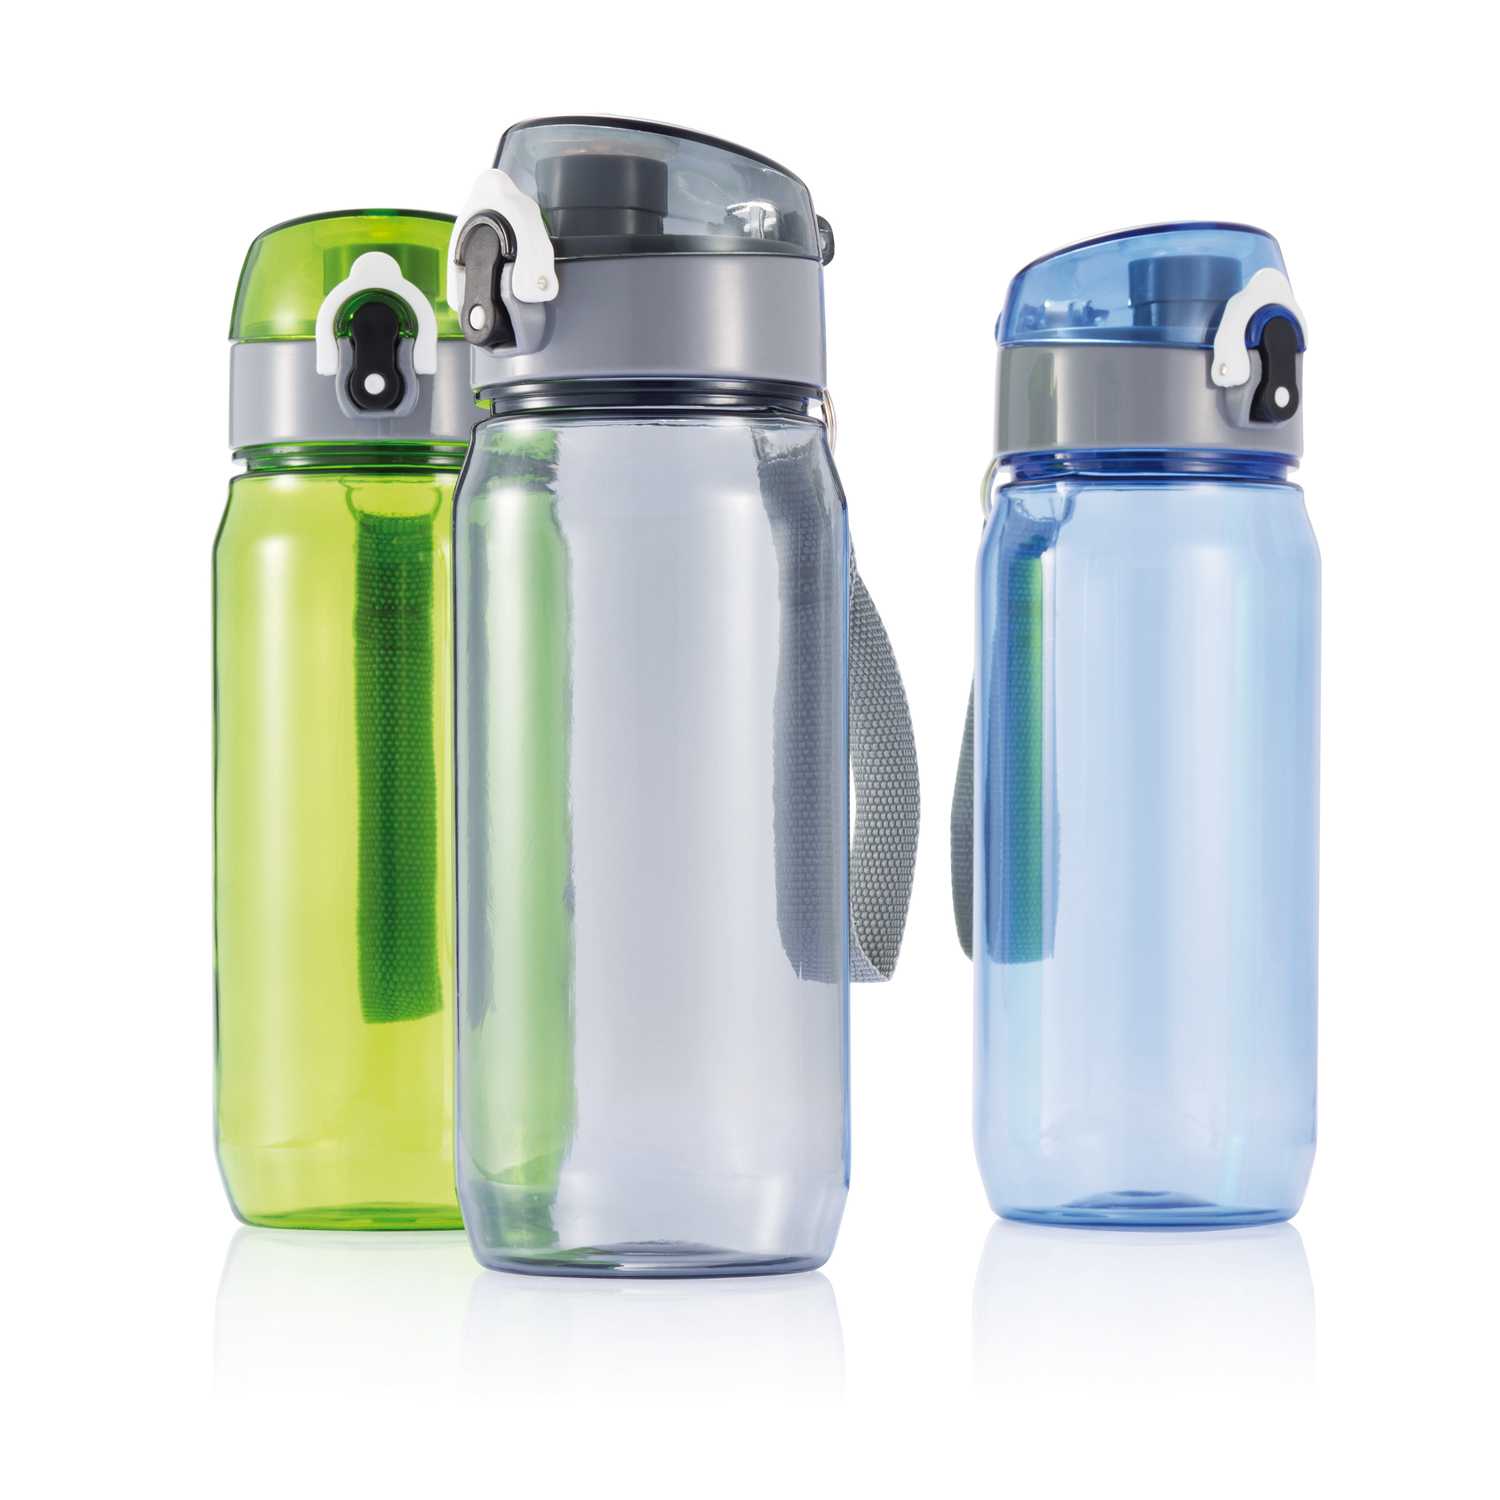 Рейтинг лучших бутылок для воды для детей и взрослых из пластика, металла и стекла